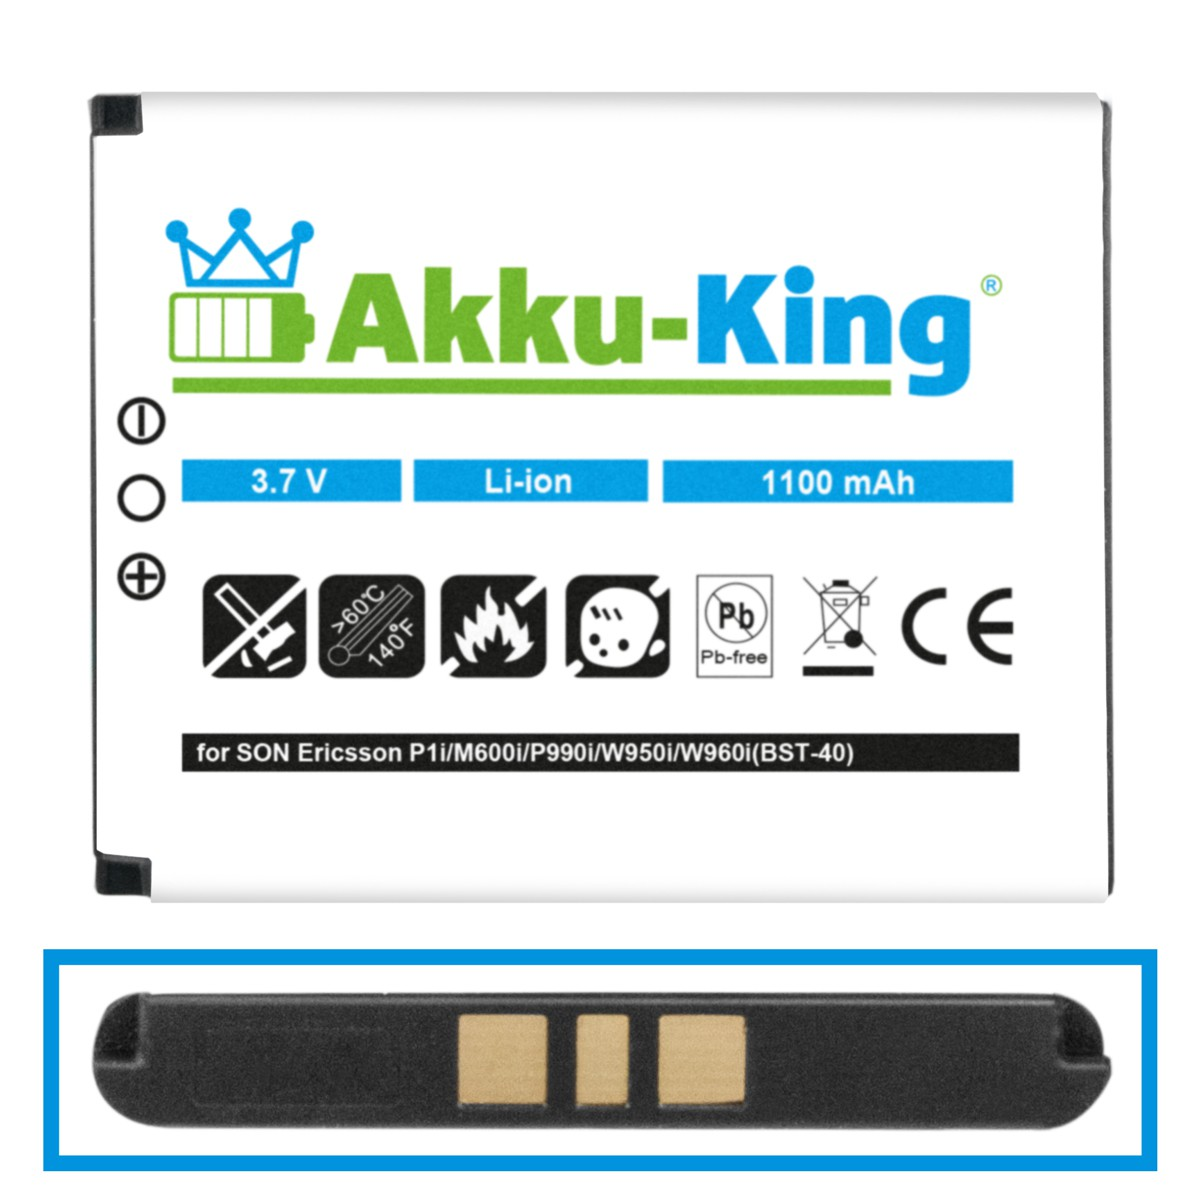 Volt, AKKU-KING mit 1100mAh 3.7 Li-Ion Sony-Ericsson Akku Handy-Akku, kompatibel BST-40